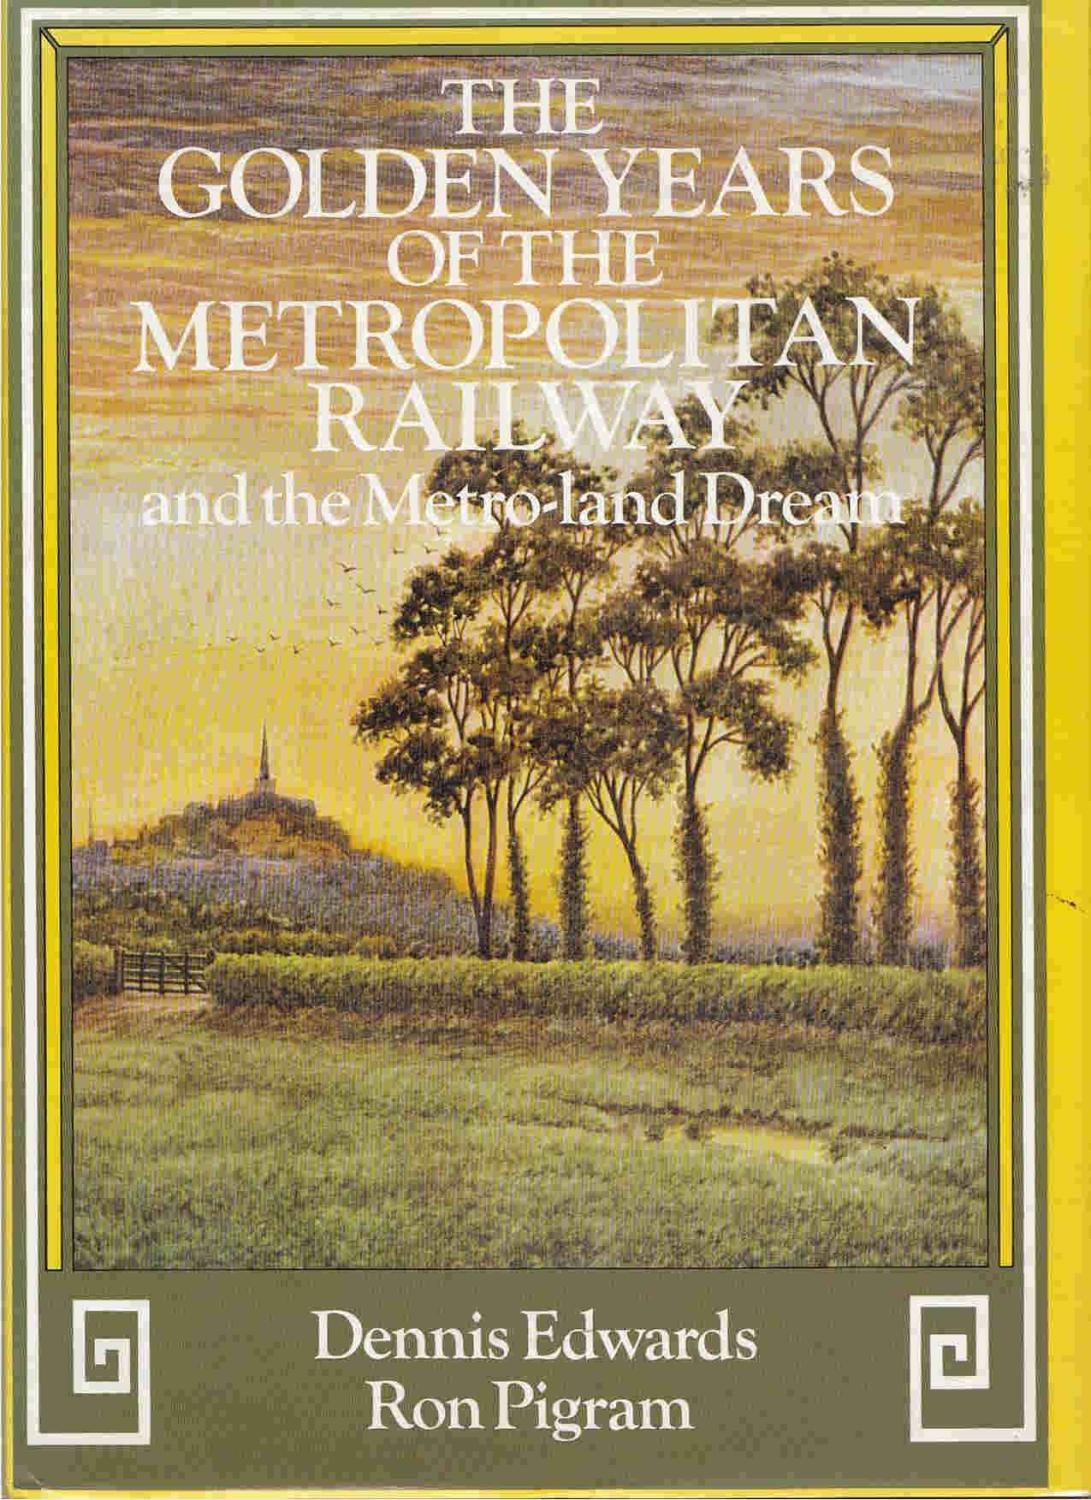 The Golden Years of the Metropolitan Railway